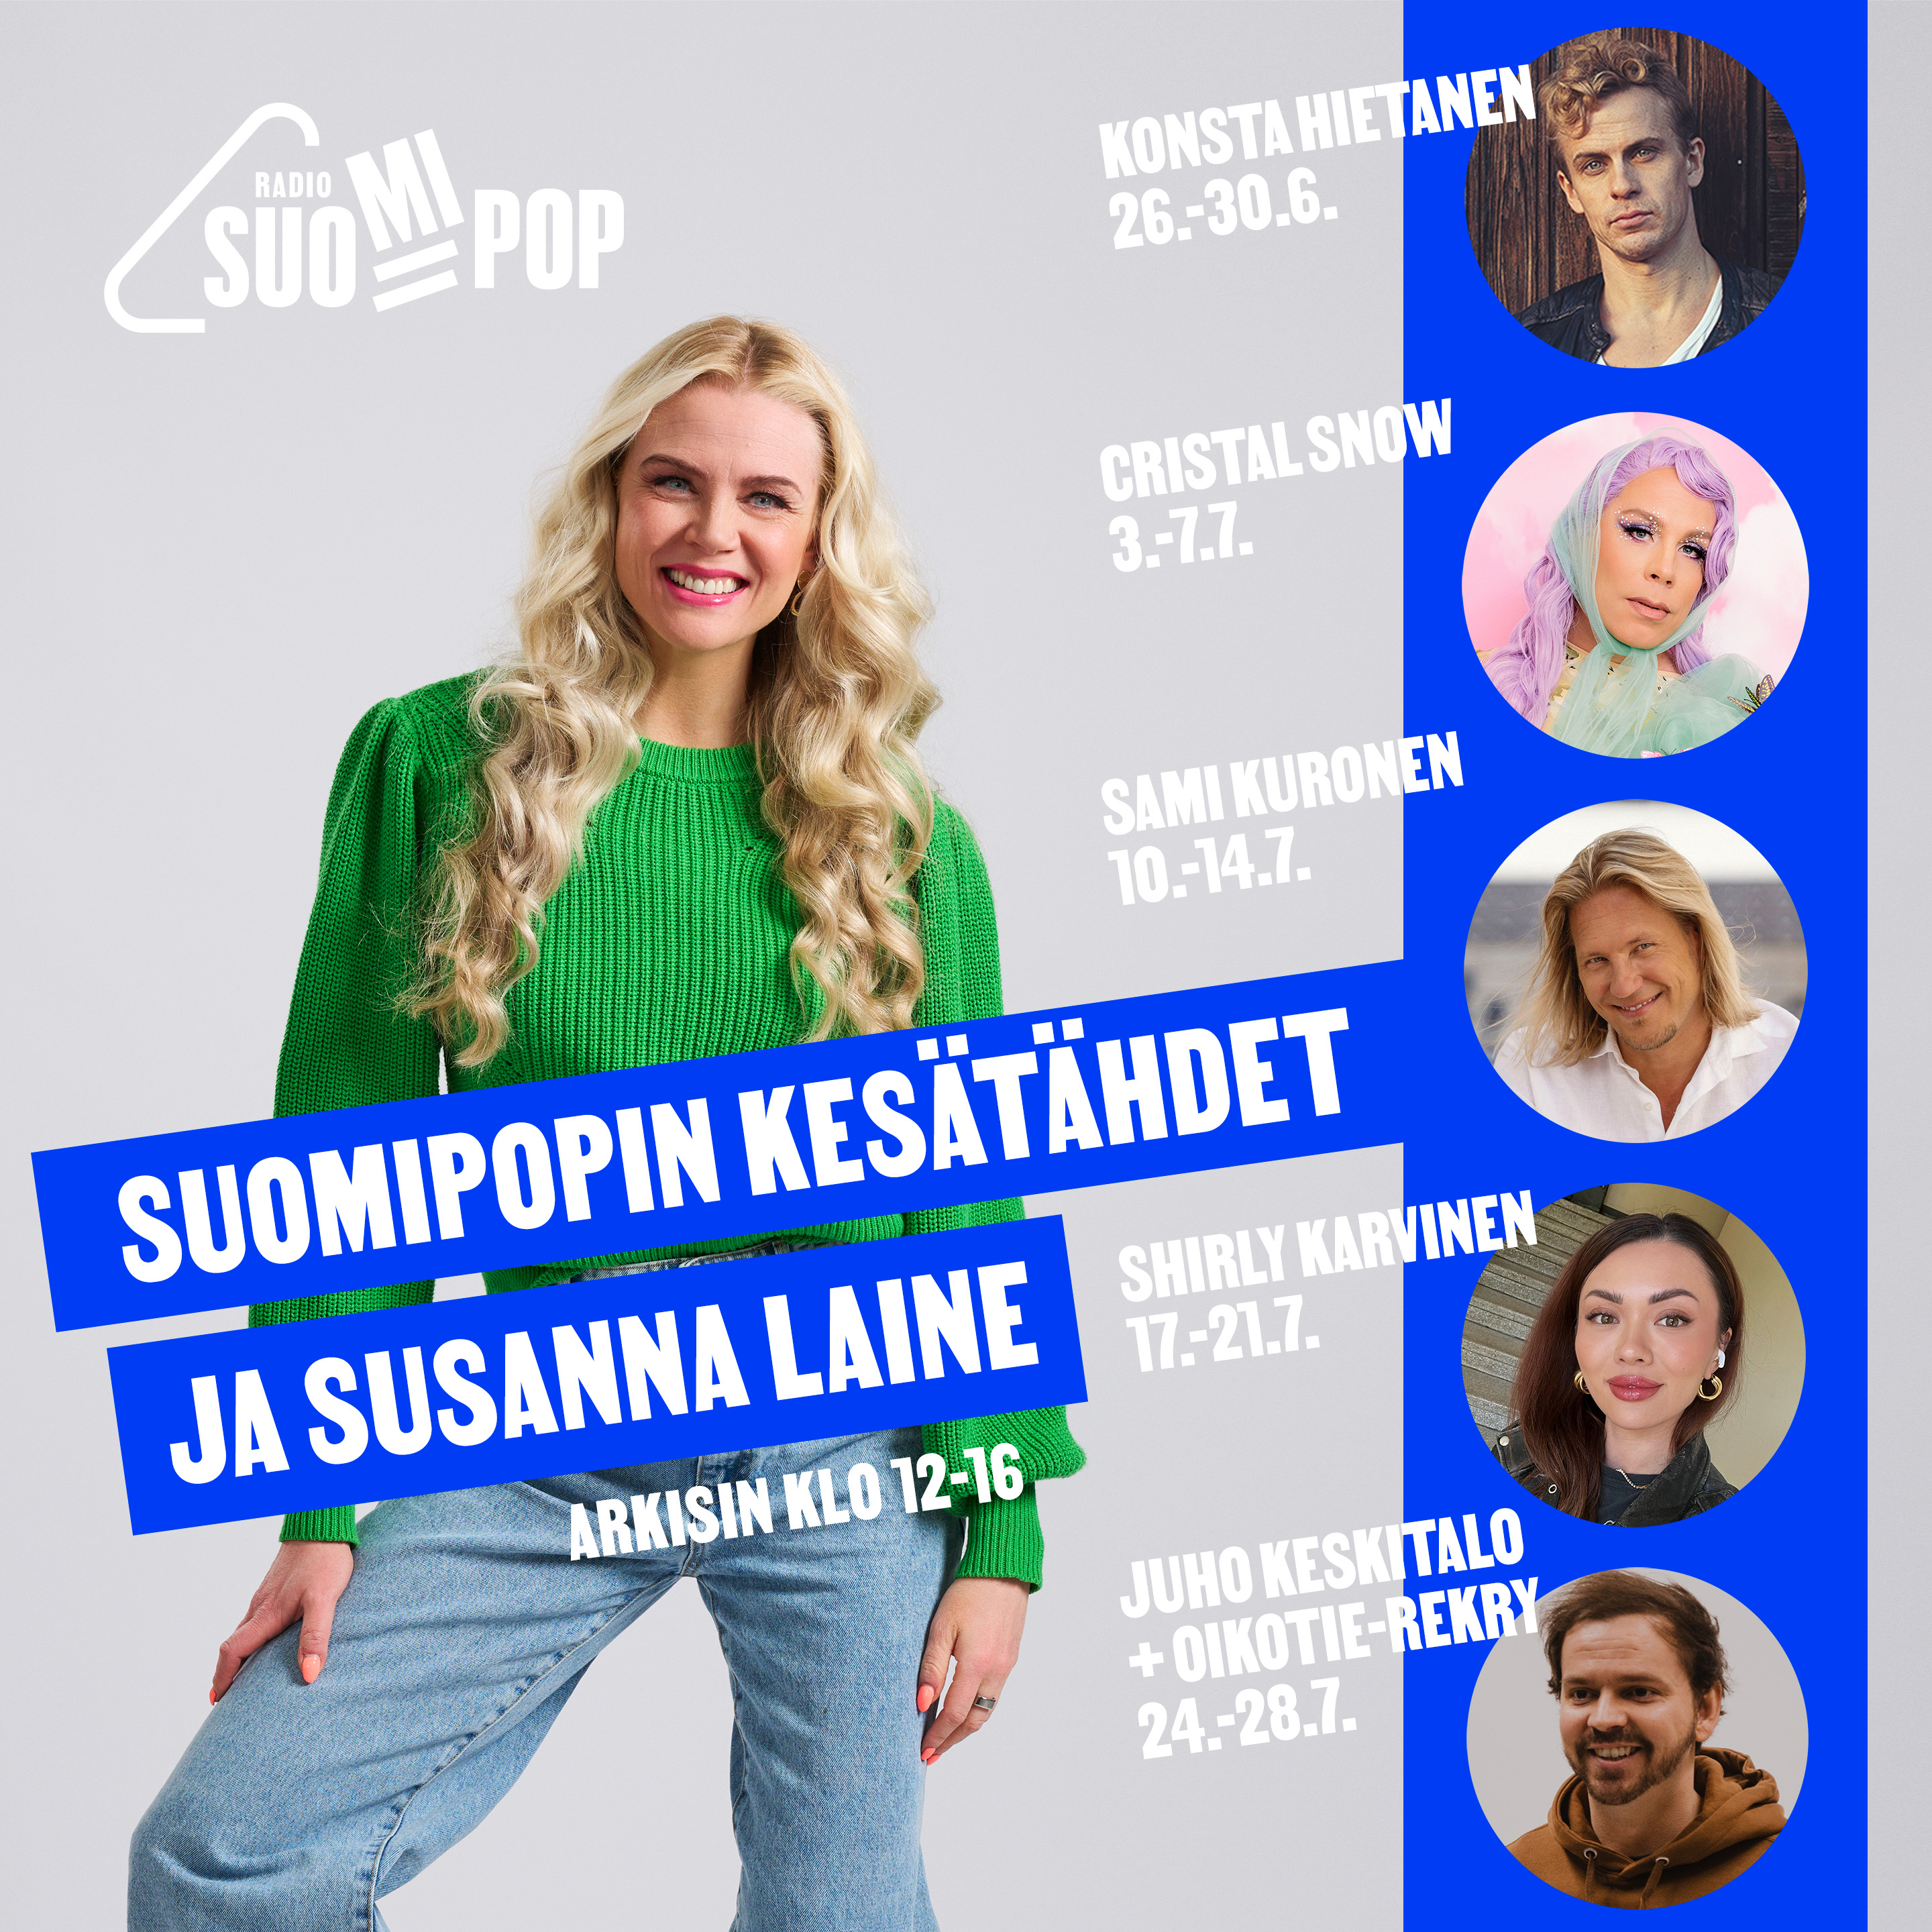 Suomipopin Kesätähdet 29.6. Konsta Hietanen